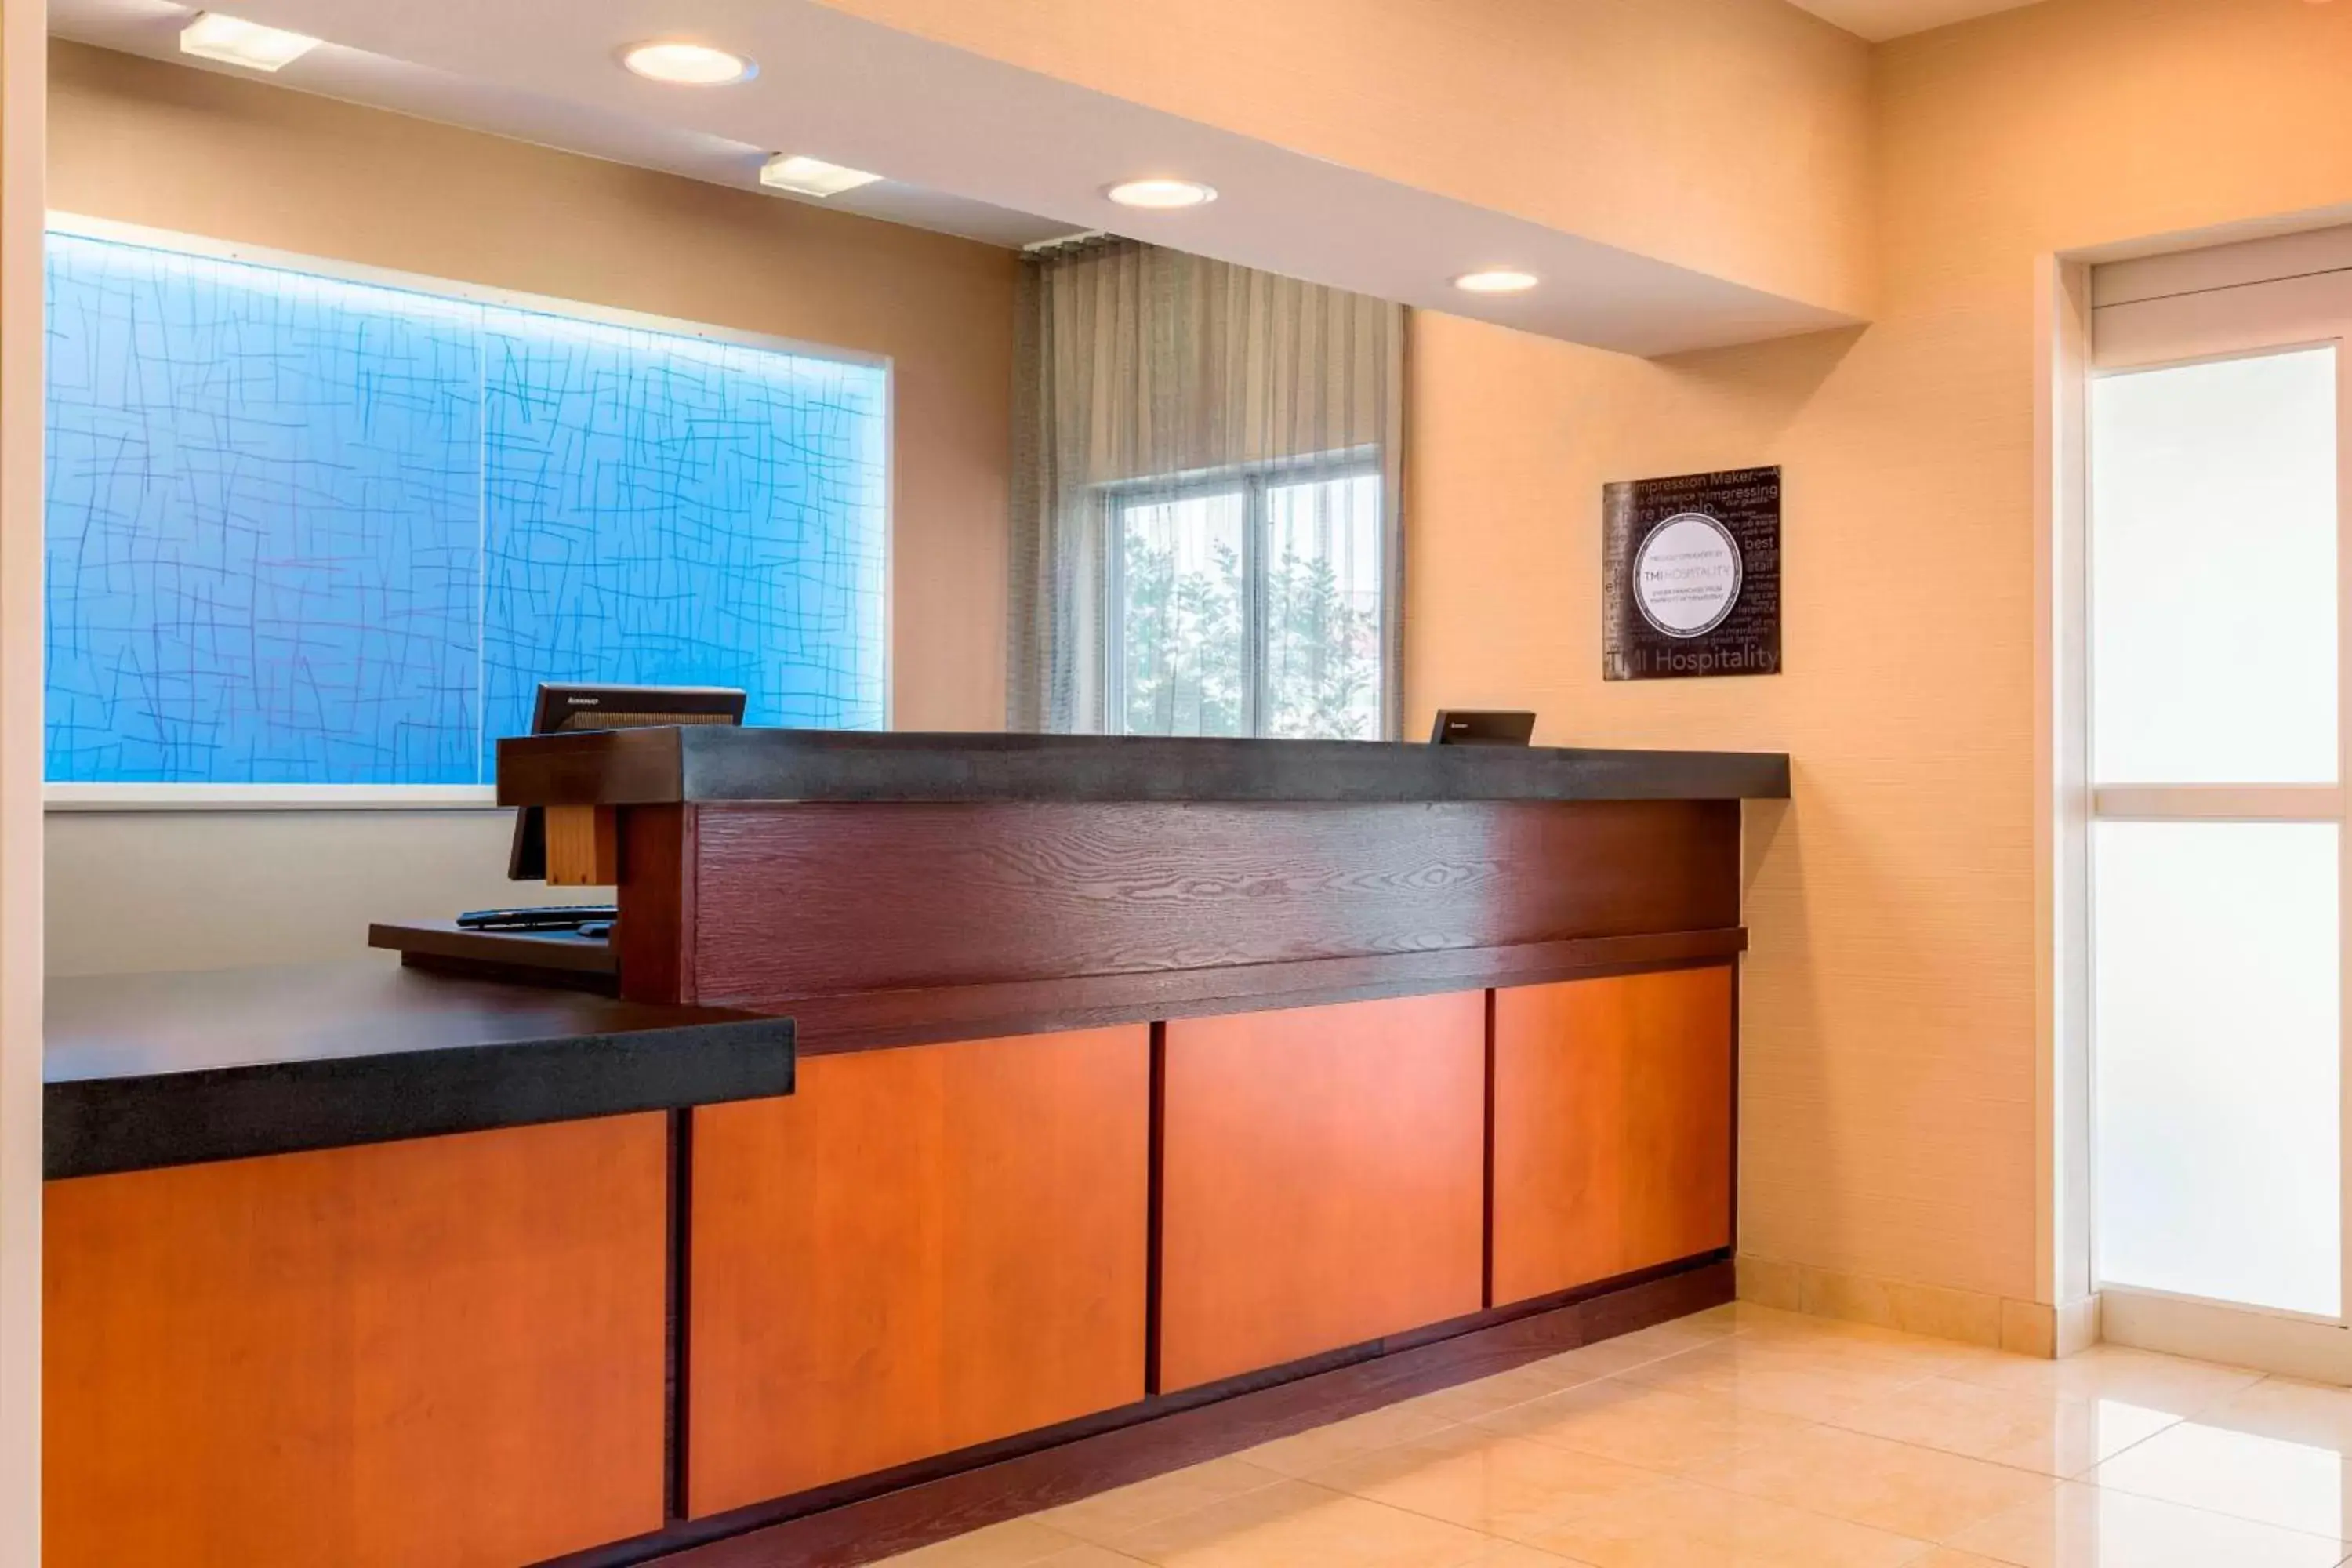 Lobby or reception, Lobby/Reception in Fairfield Inn & Suites by Marriott Abilene